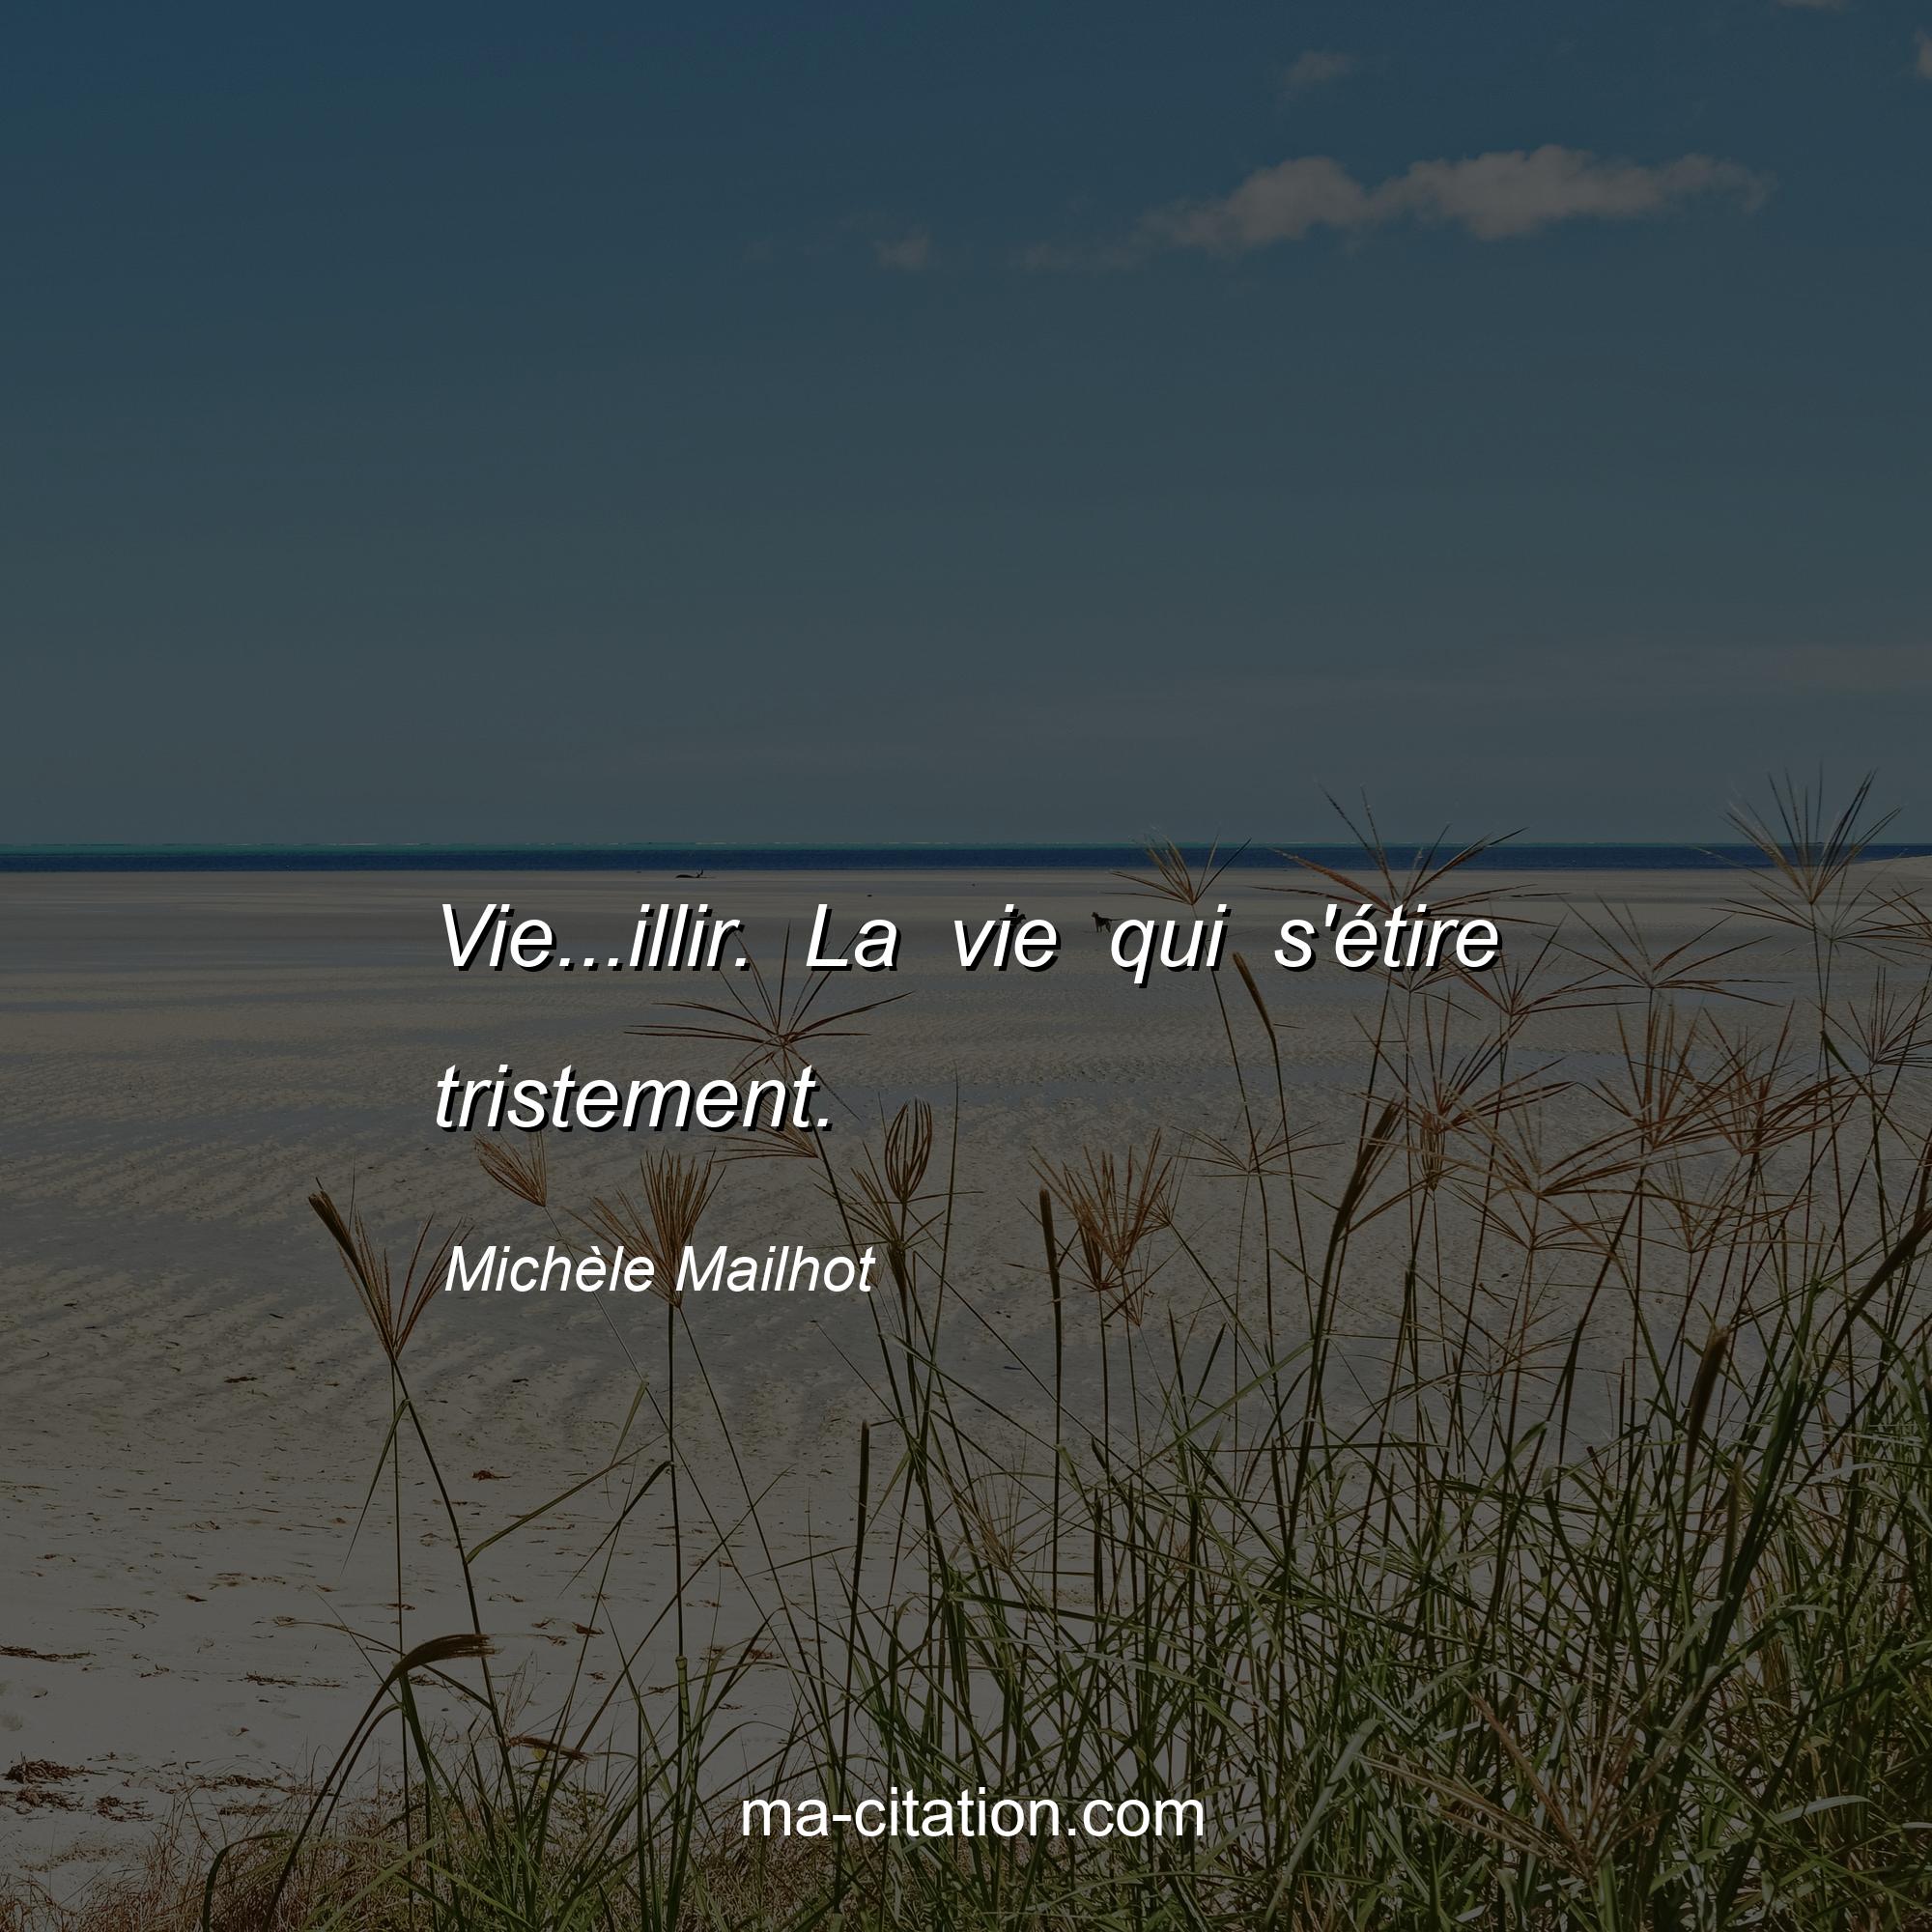 Michèle Mailhot : Vie...illir. La vie qui s'étire tristement.